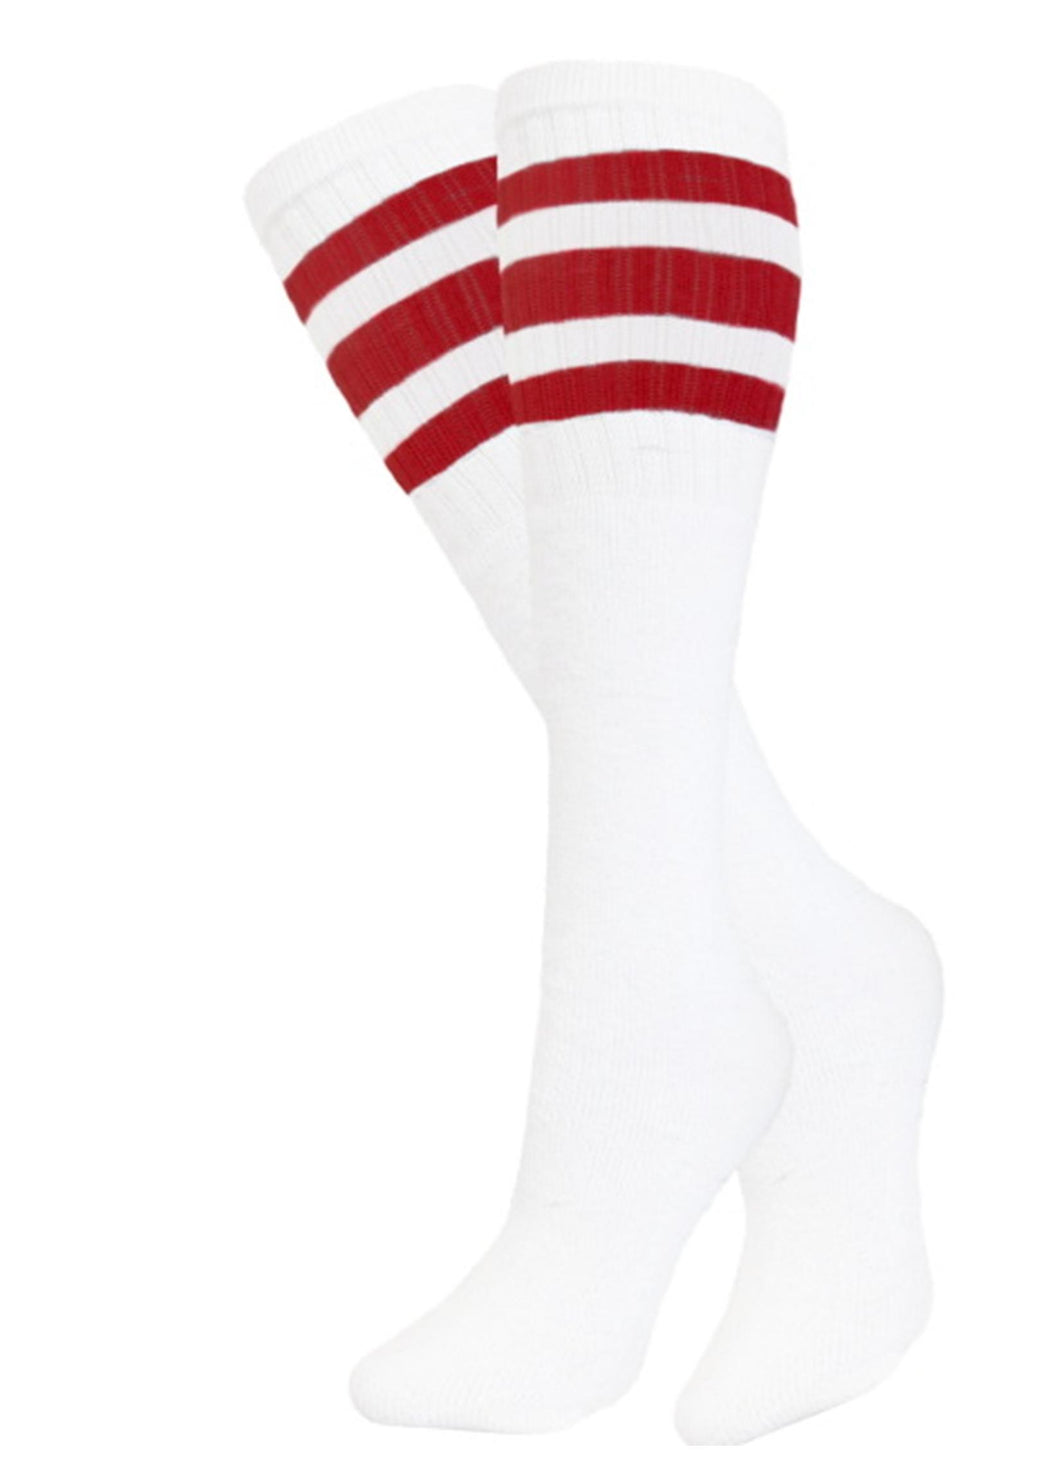 Tube Socks 3 OR 6 Pair Pack - White Red